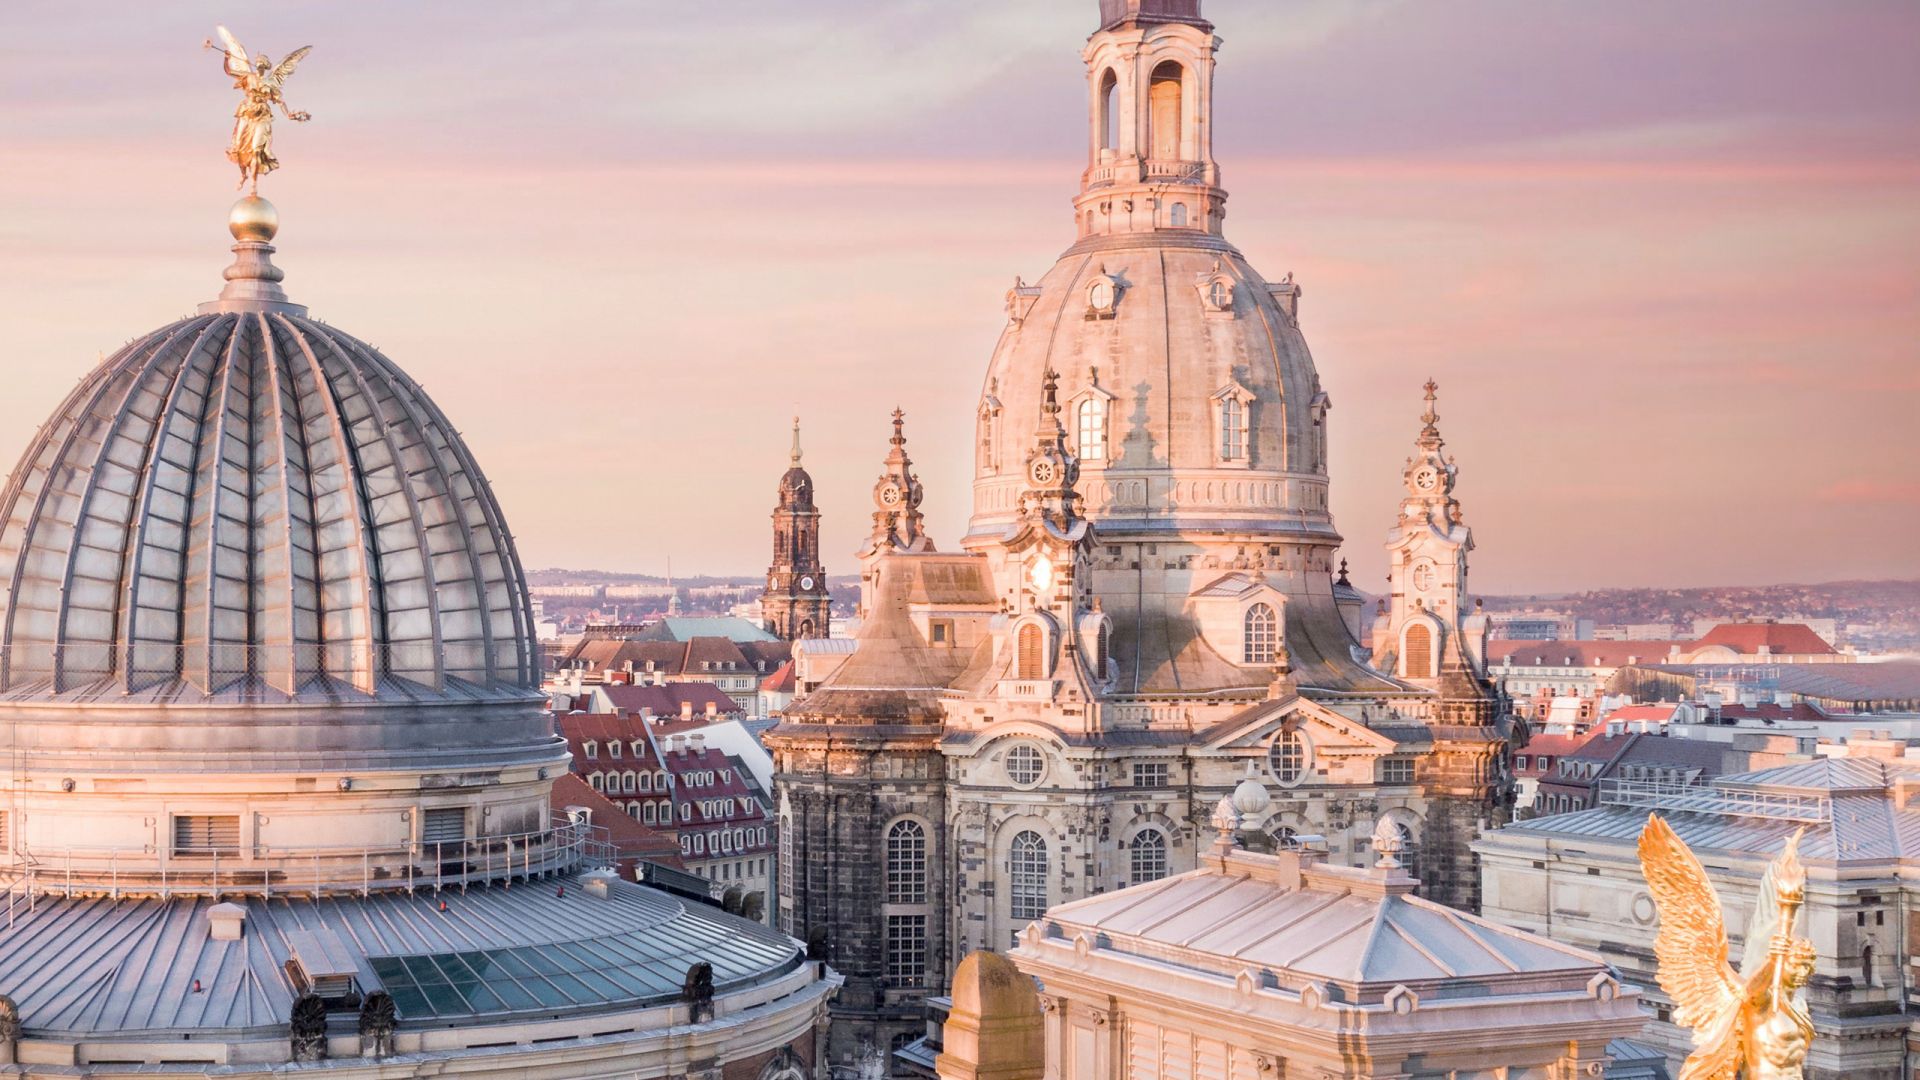 Dresden: Frauenkirche at sunset